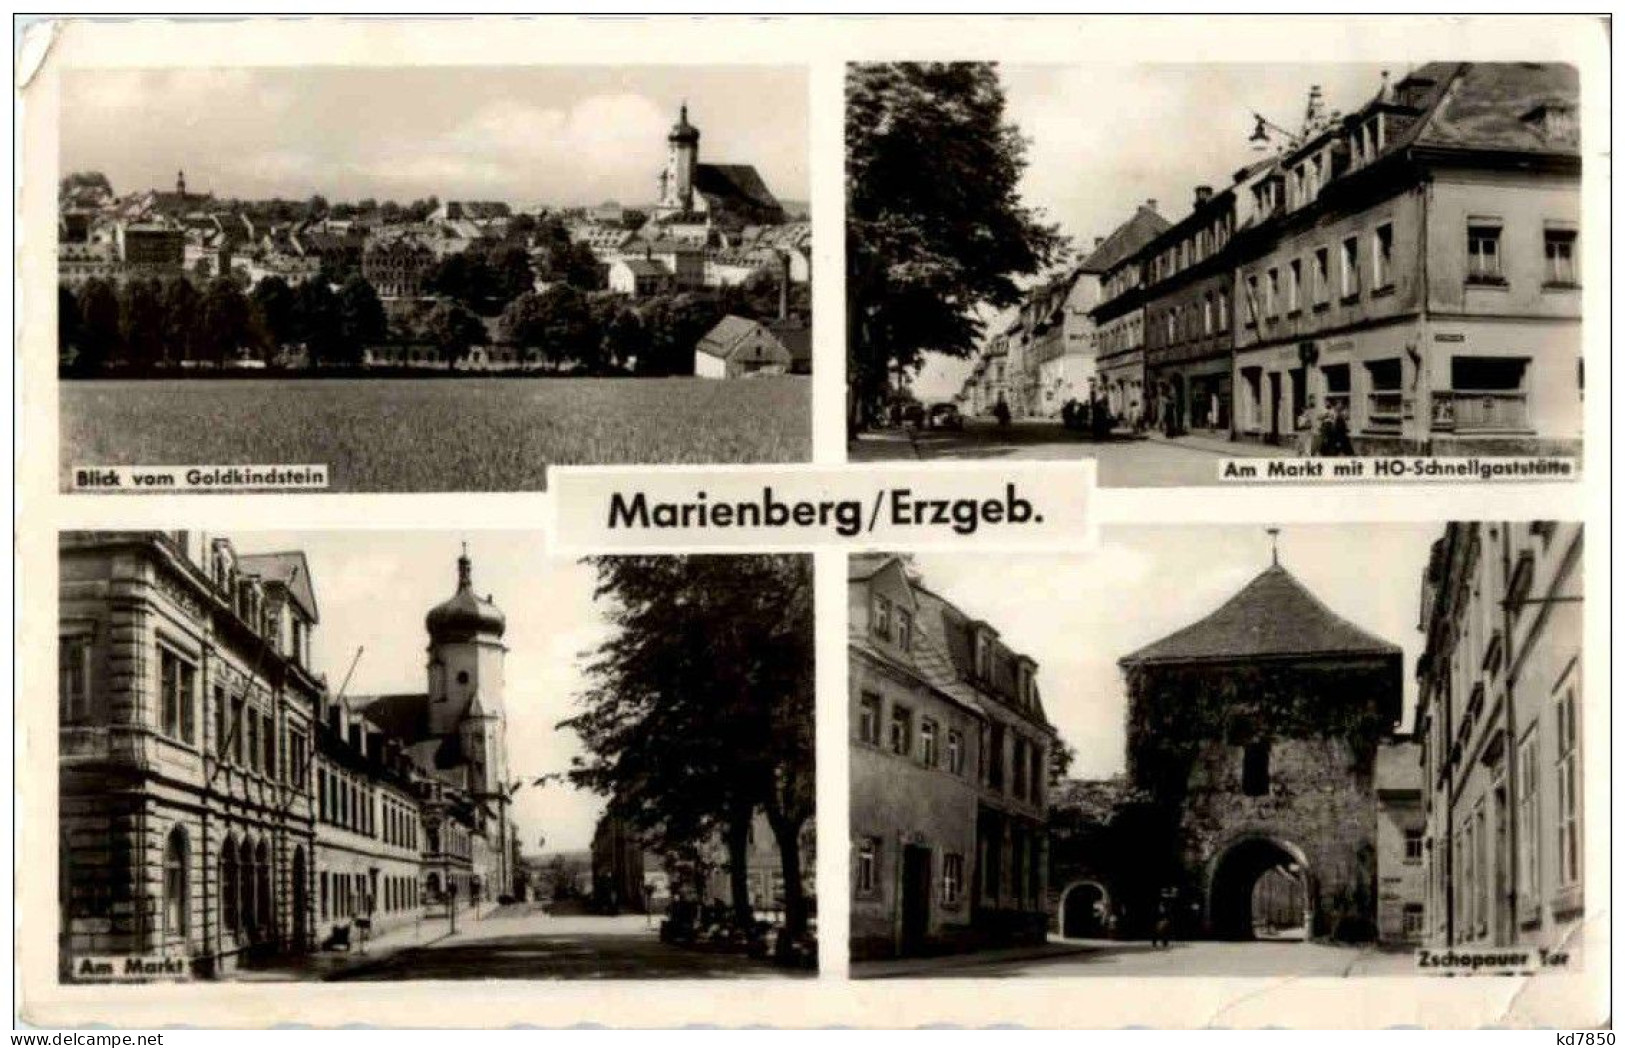 Marienberg - Marienberg